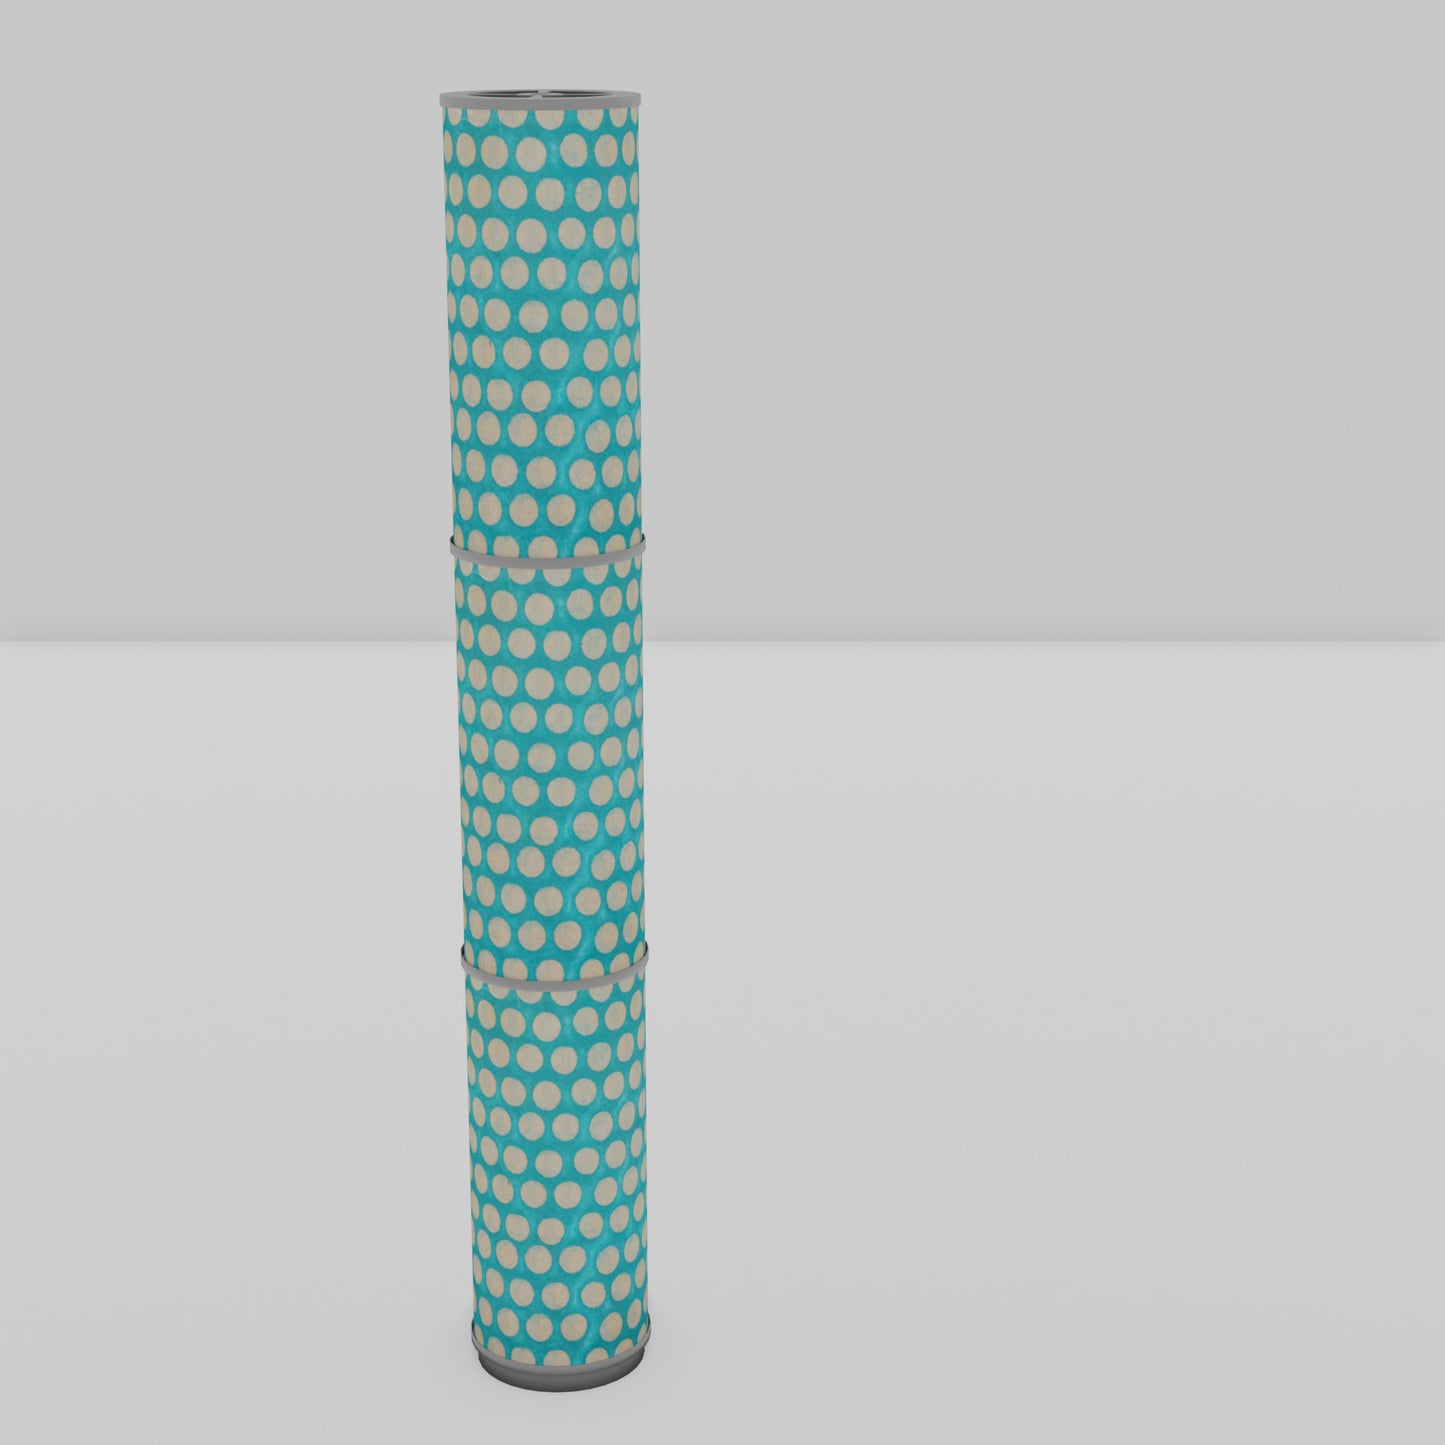 3 Panel Floor Lamp - P97 - Batik Dots on Cyan, 20cm(d) x 1.4m(h)